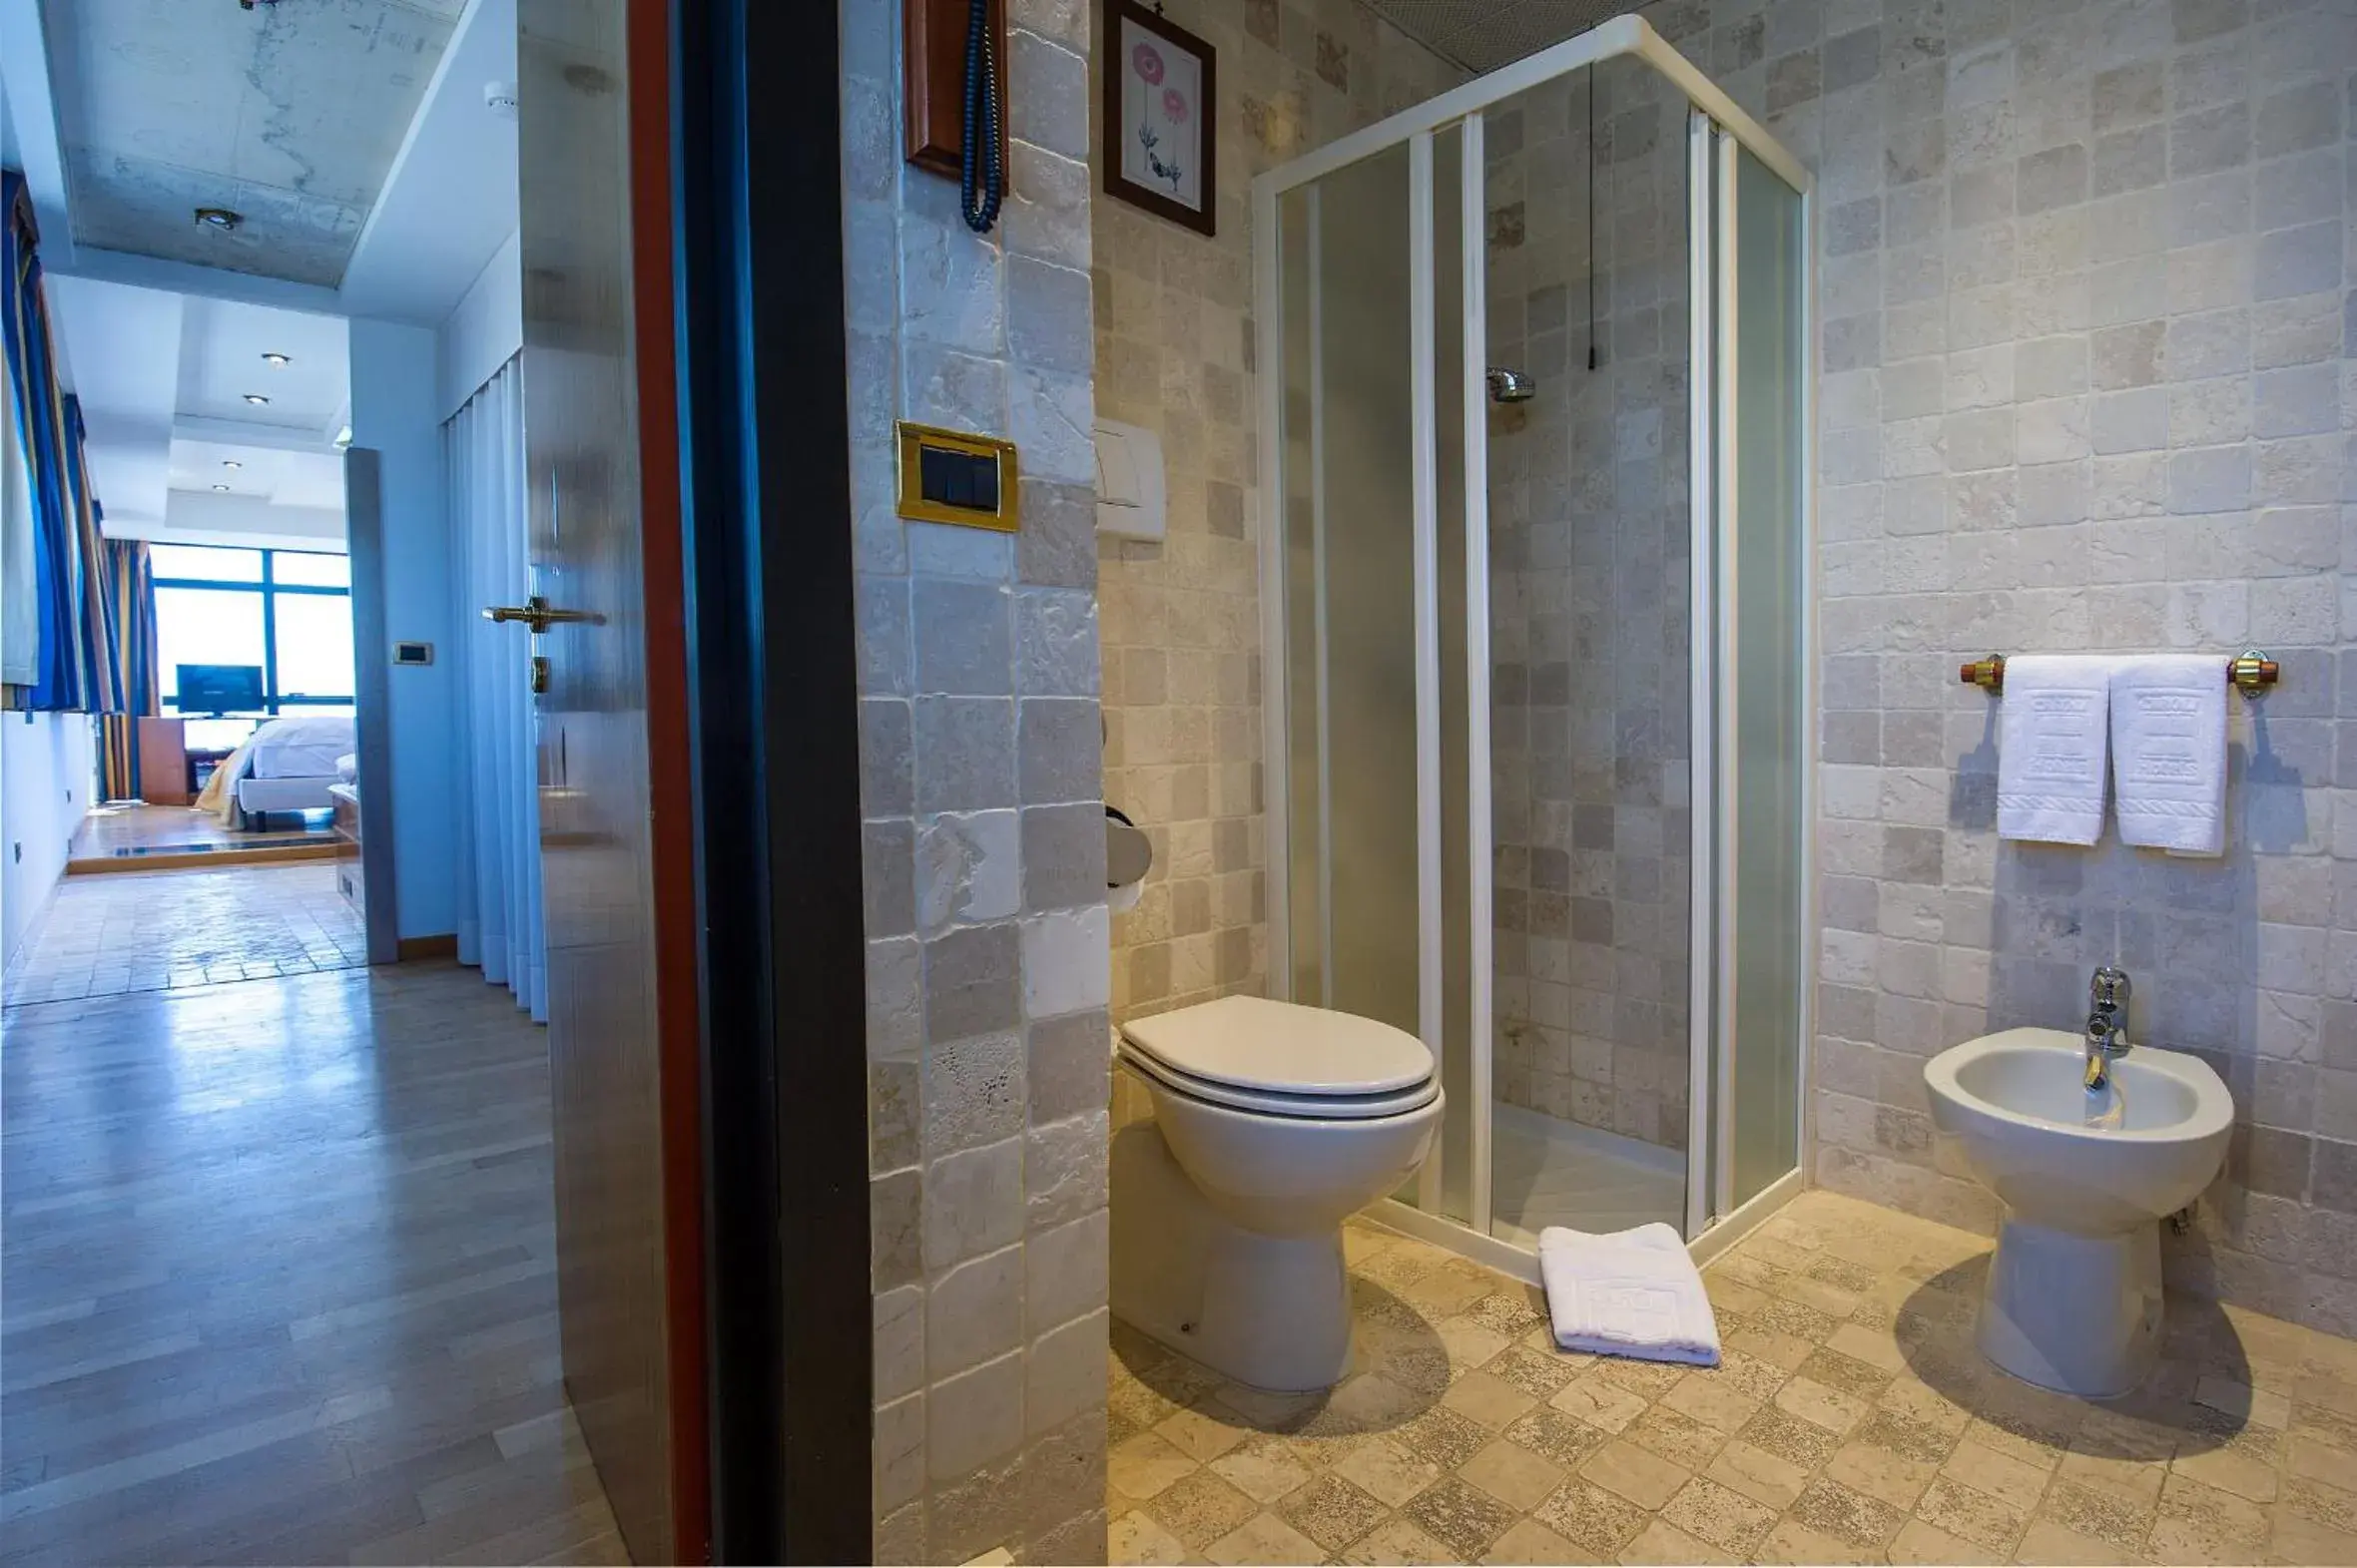 Bathroom in Hotel Bellavista Club-Caroli Hotels